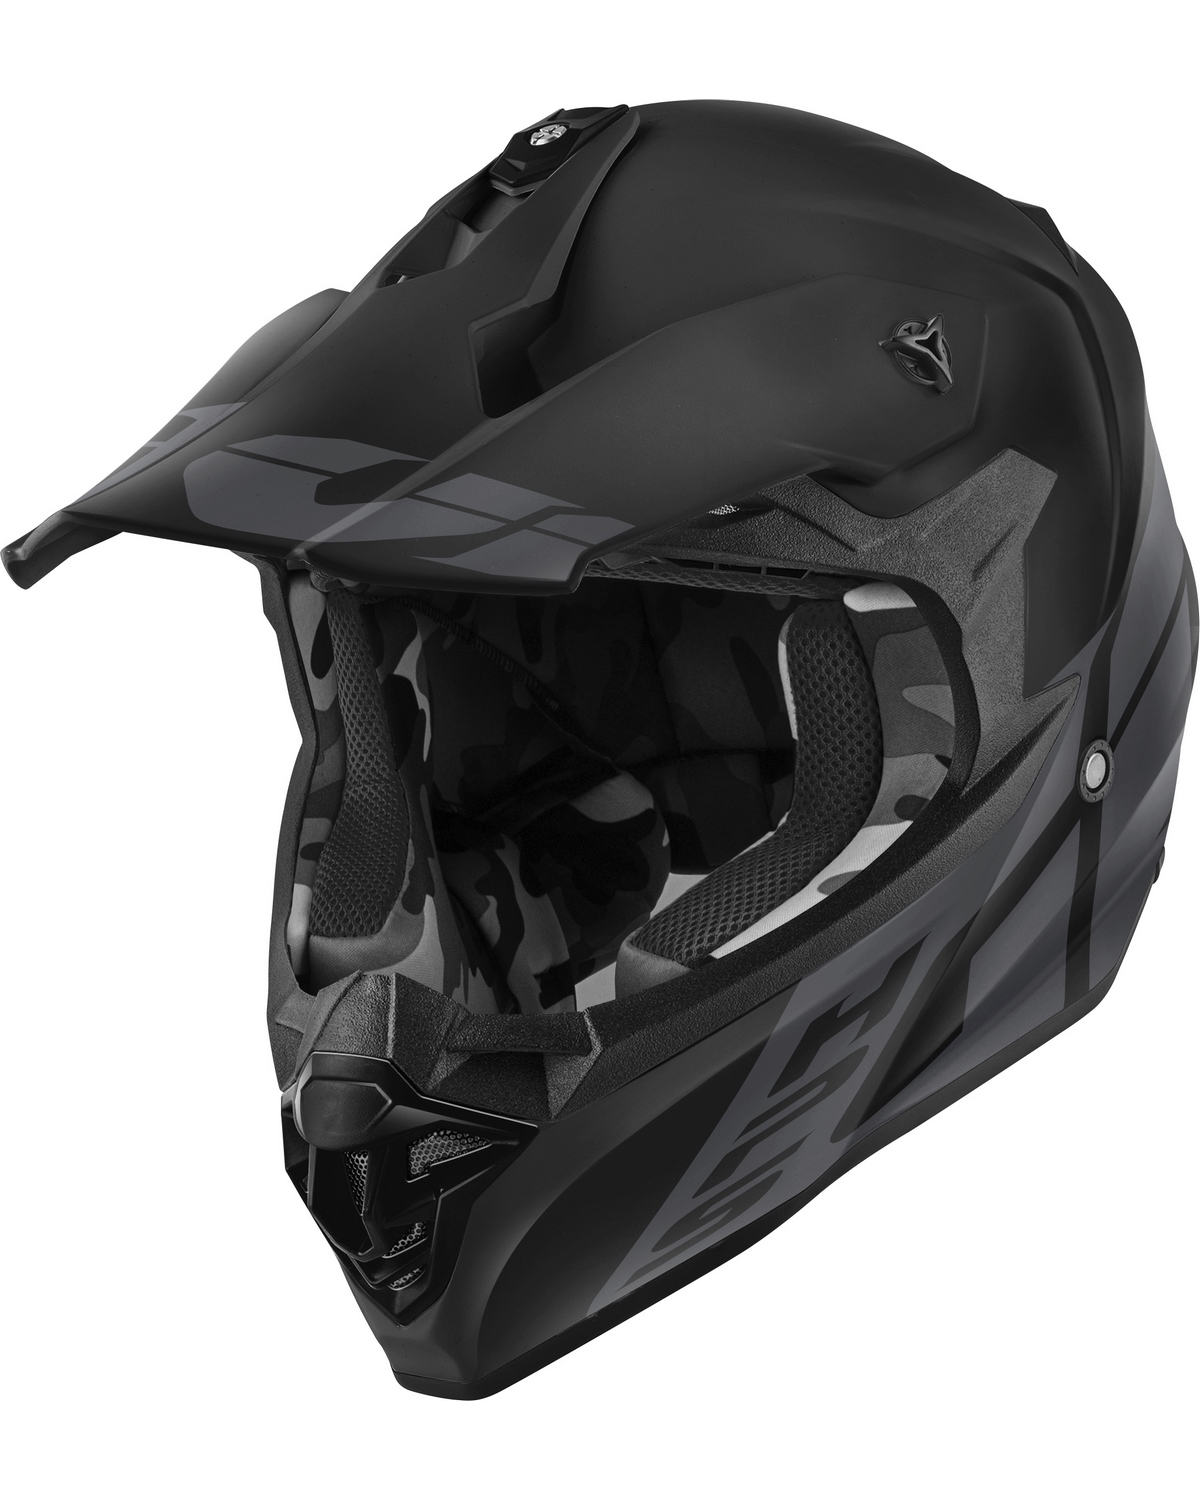 Masque moto en cuir (sans filtre)